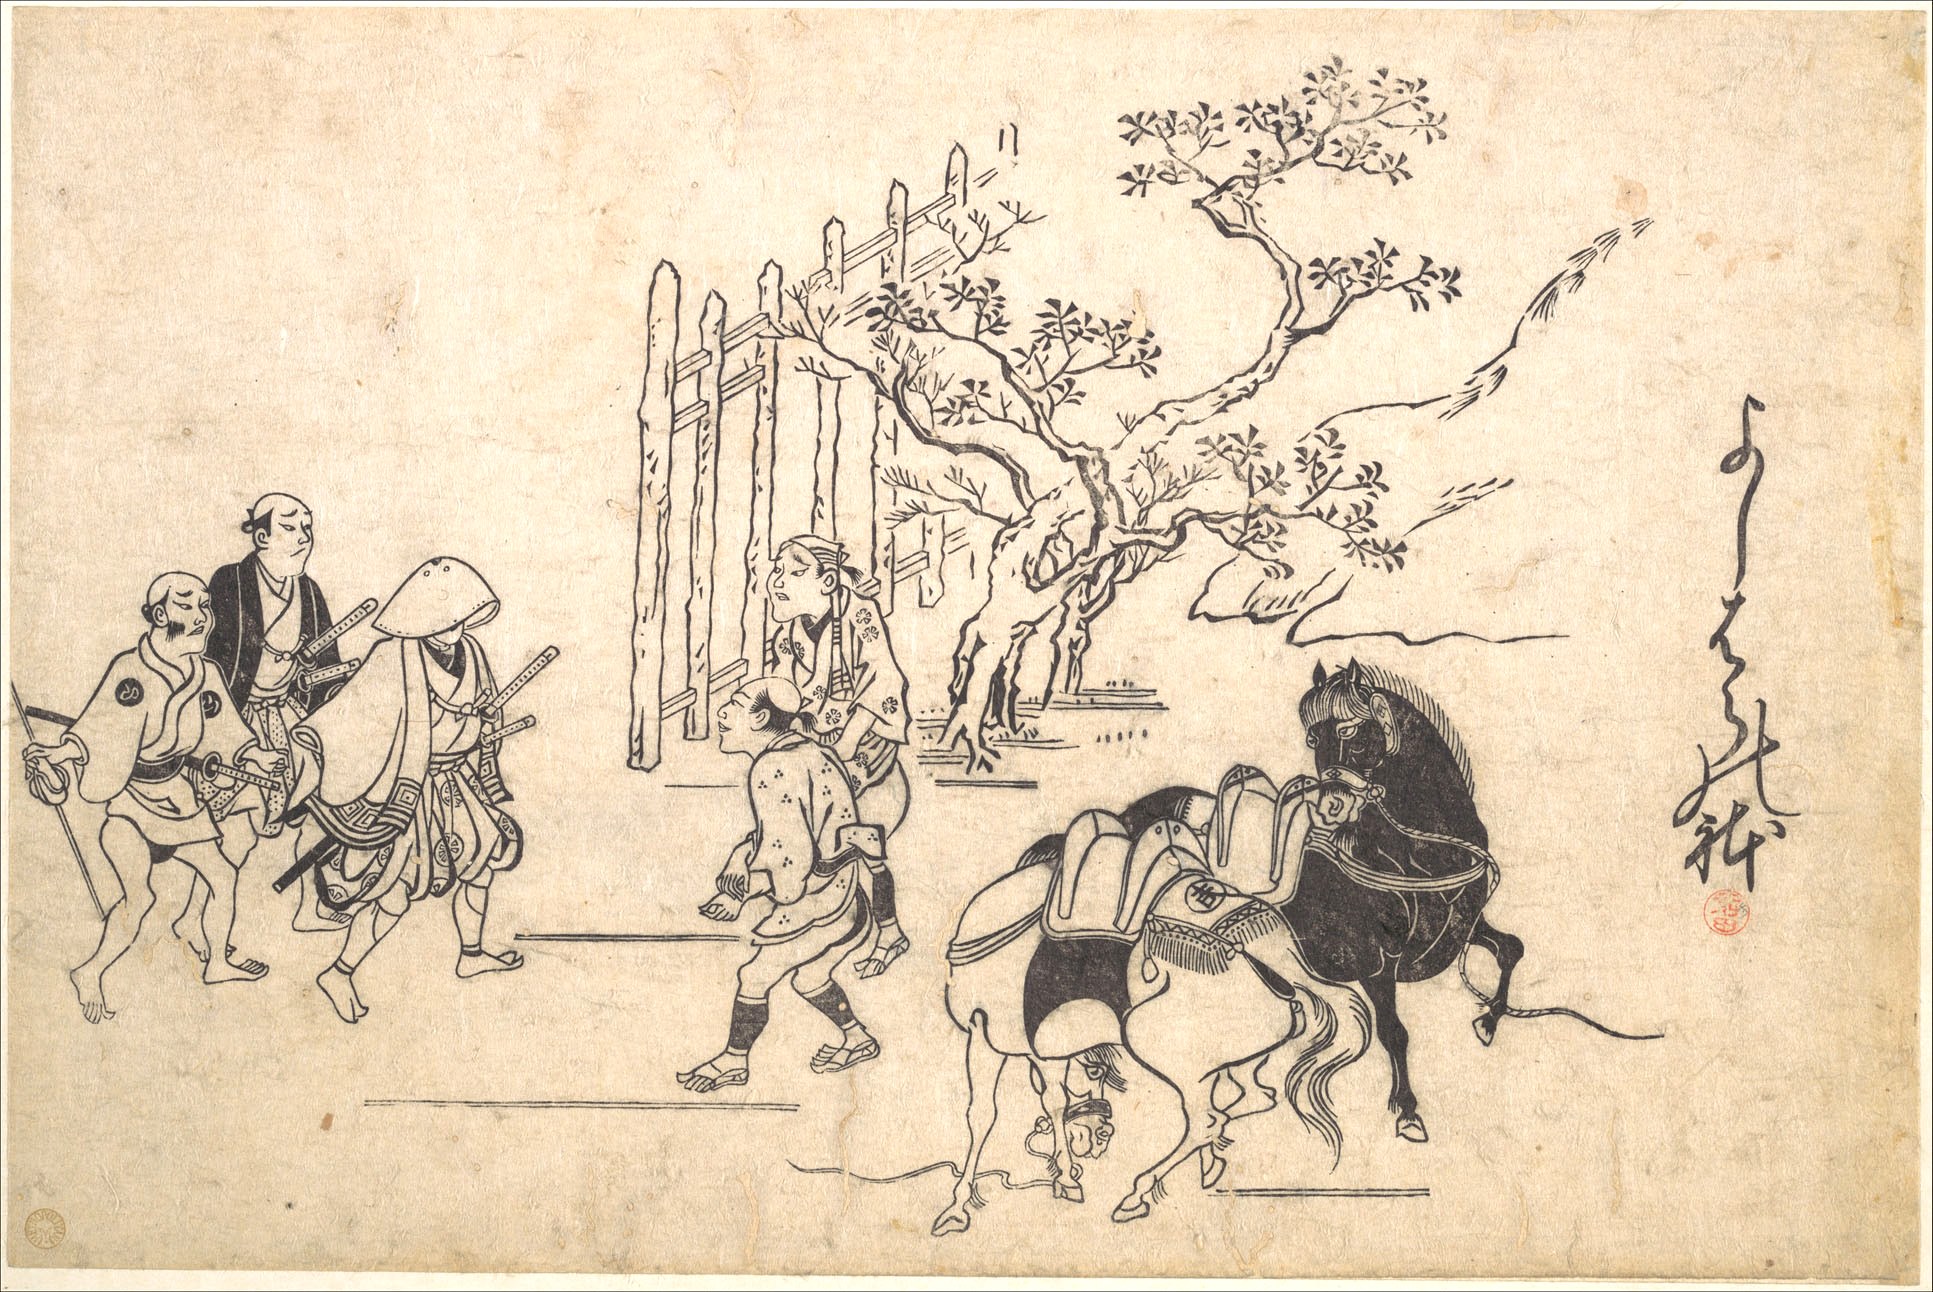 Моронобу Хисикава. "Два молодых самурая". Около 1880.